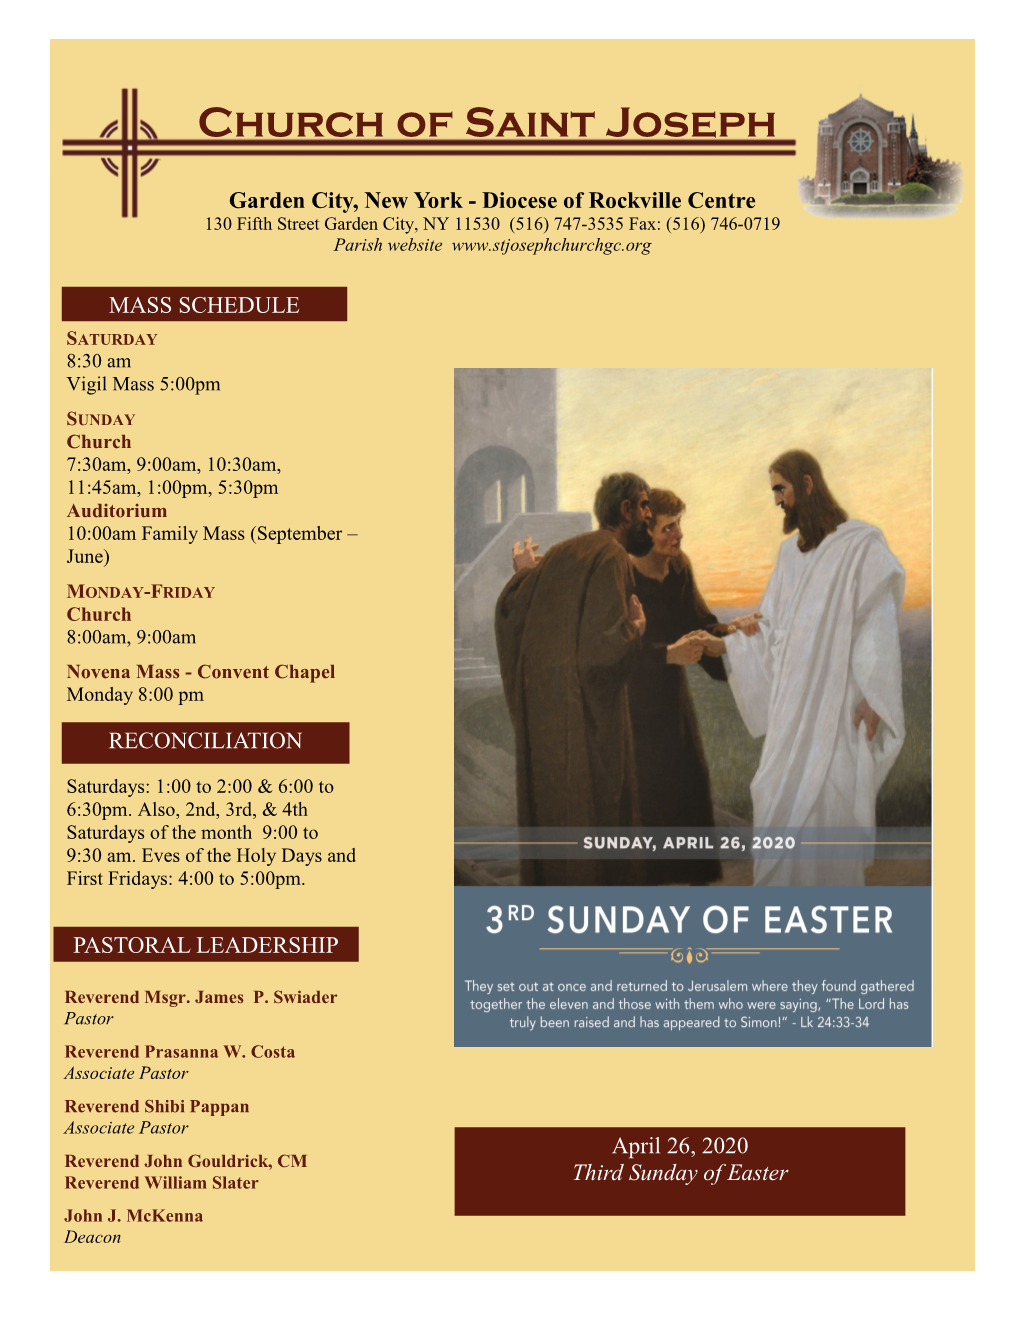 April 26, 2020 Reverend John Gouldrick, CM Reverend William Slater Third Sunday of Easter John J